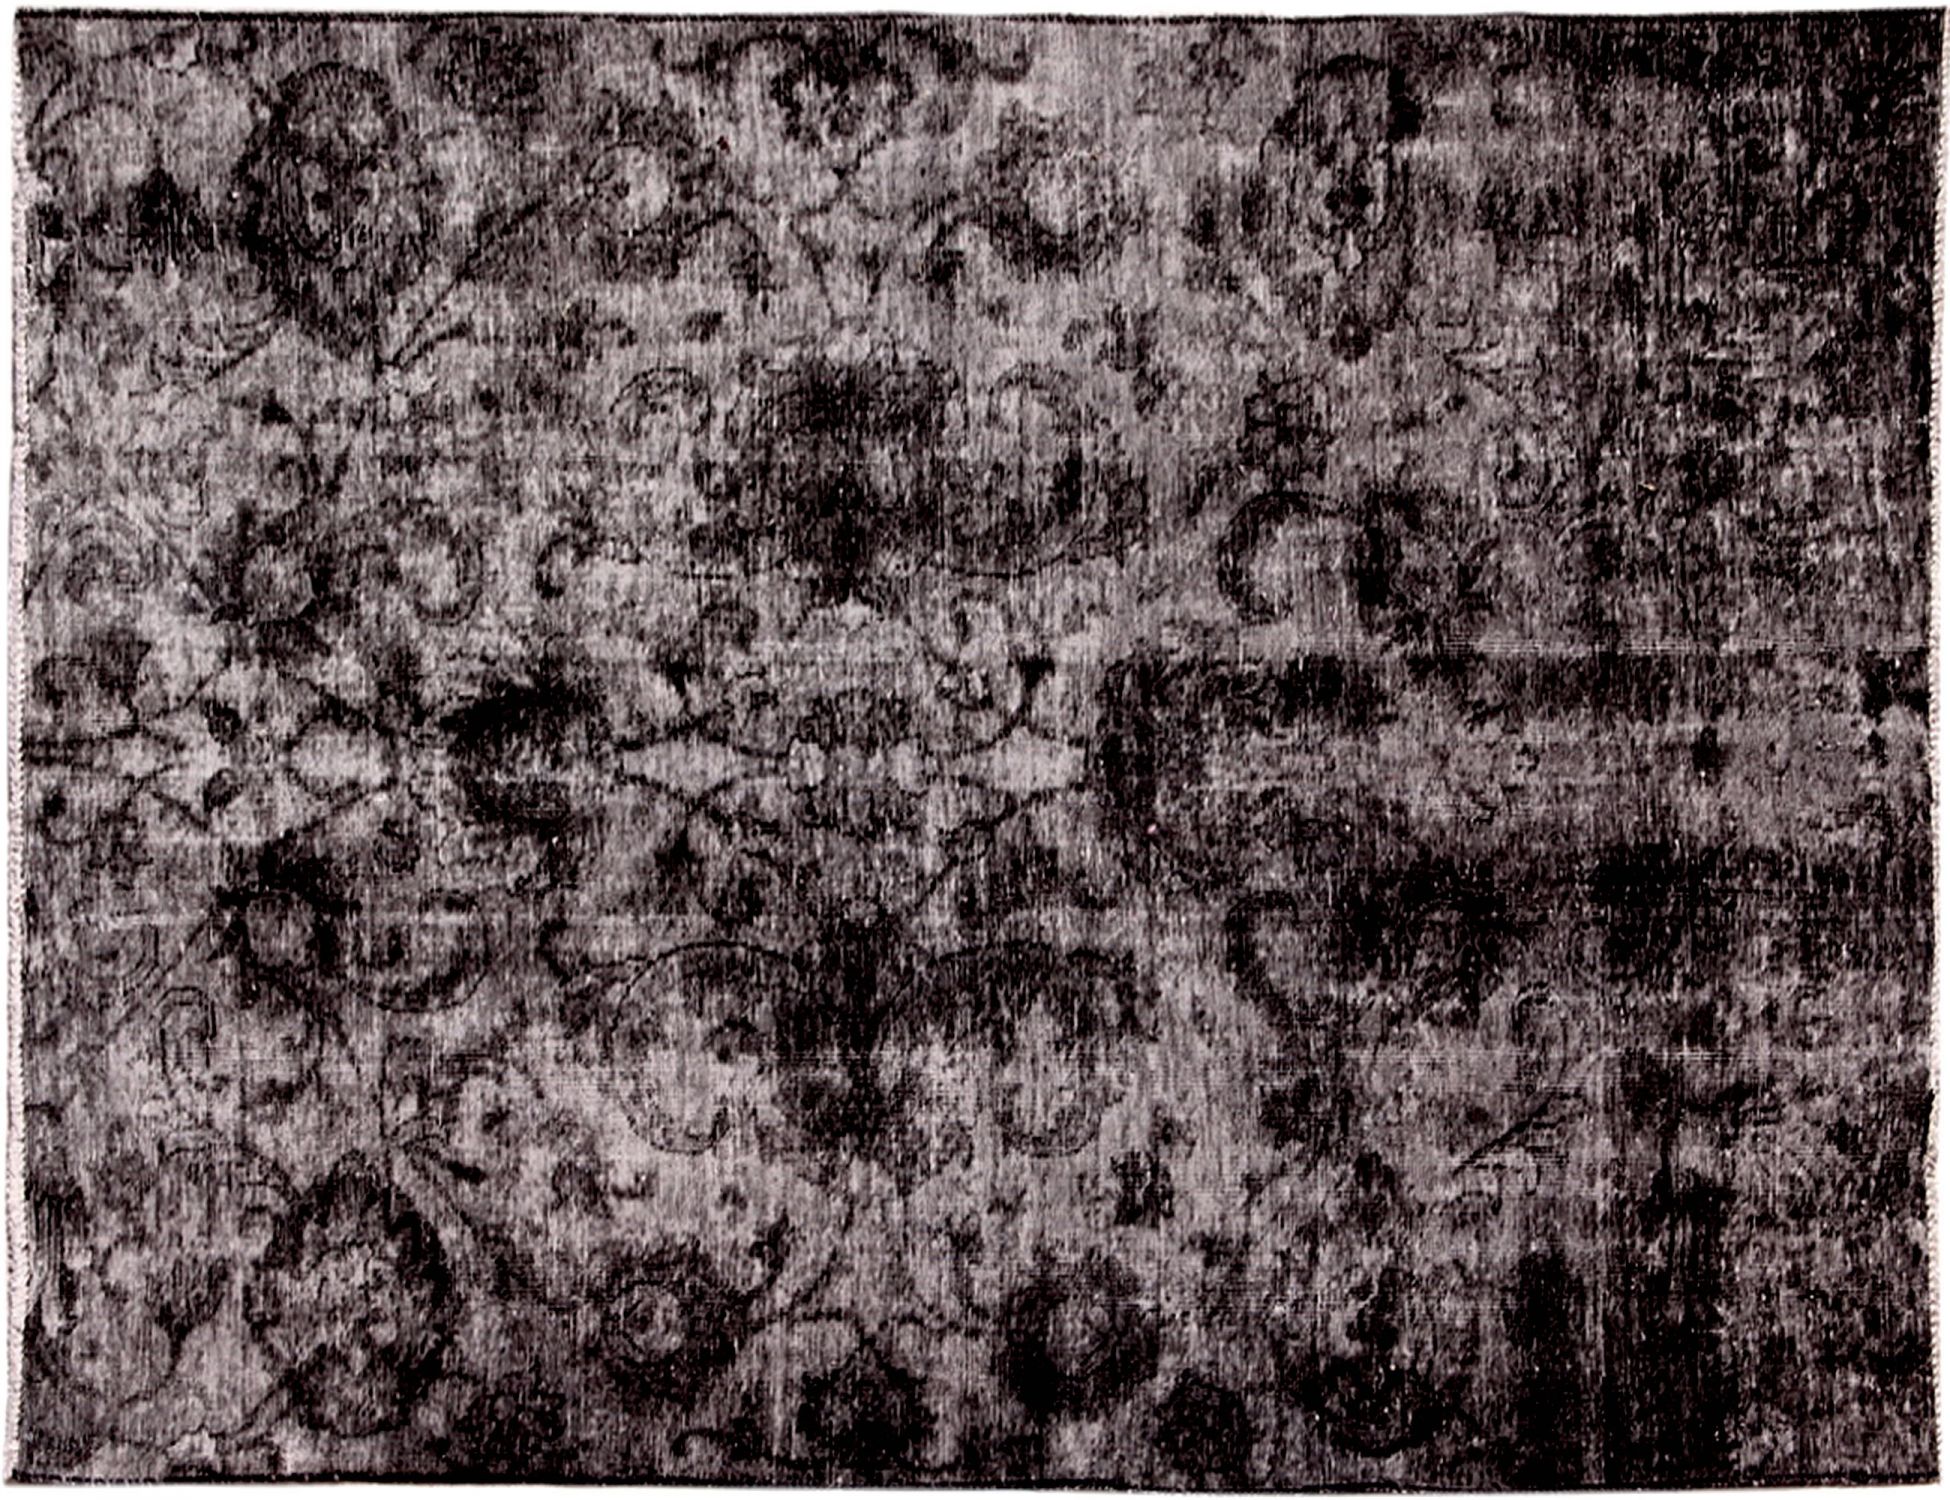 Persischer Vintage Teppich  schwarz <br/>210 x 130 cm